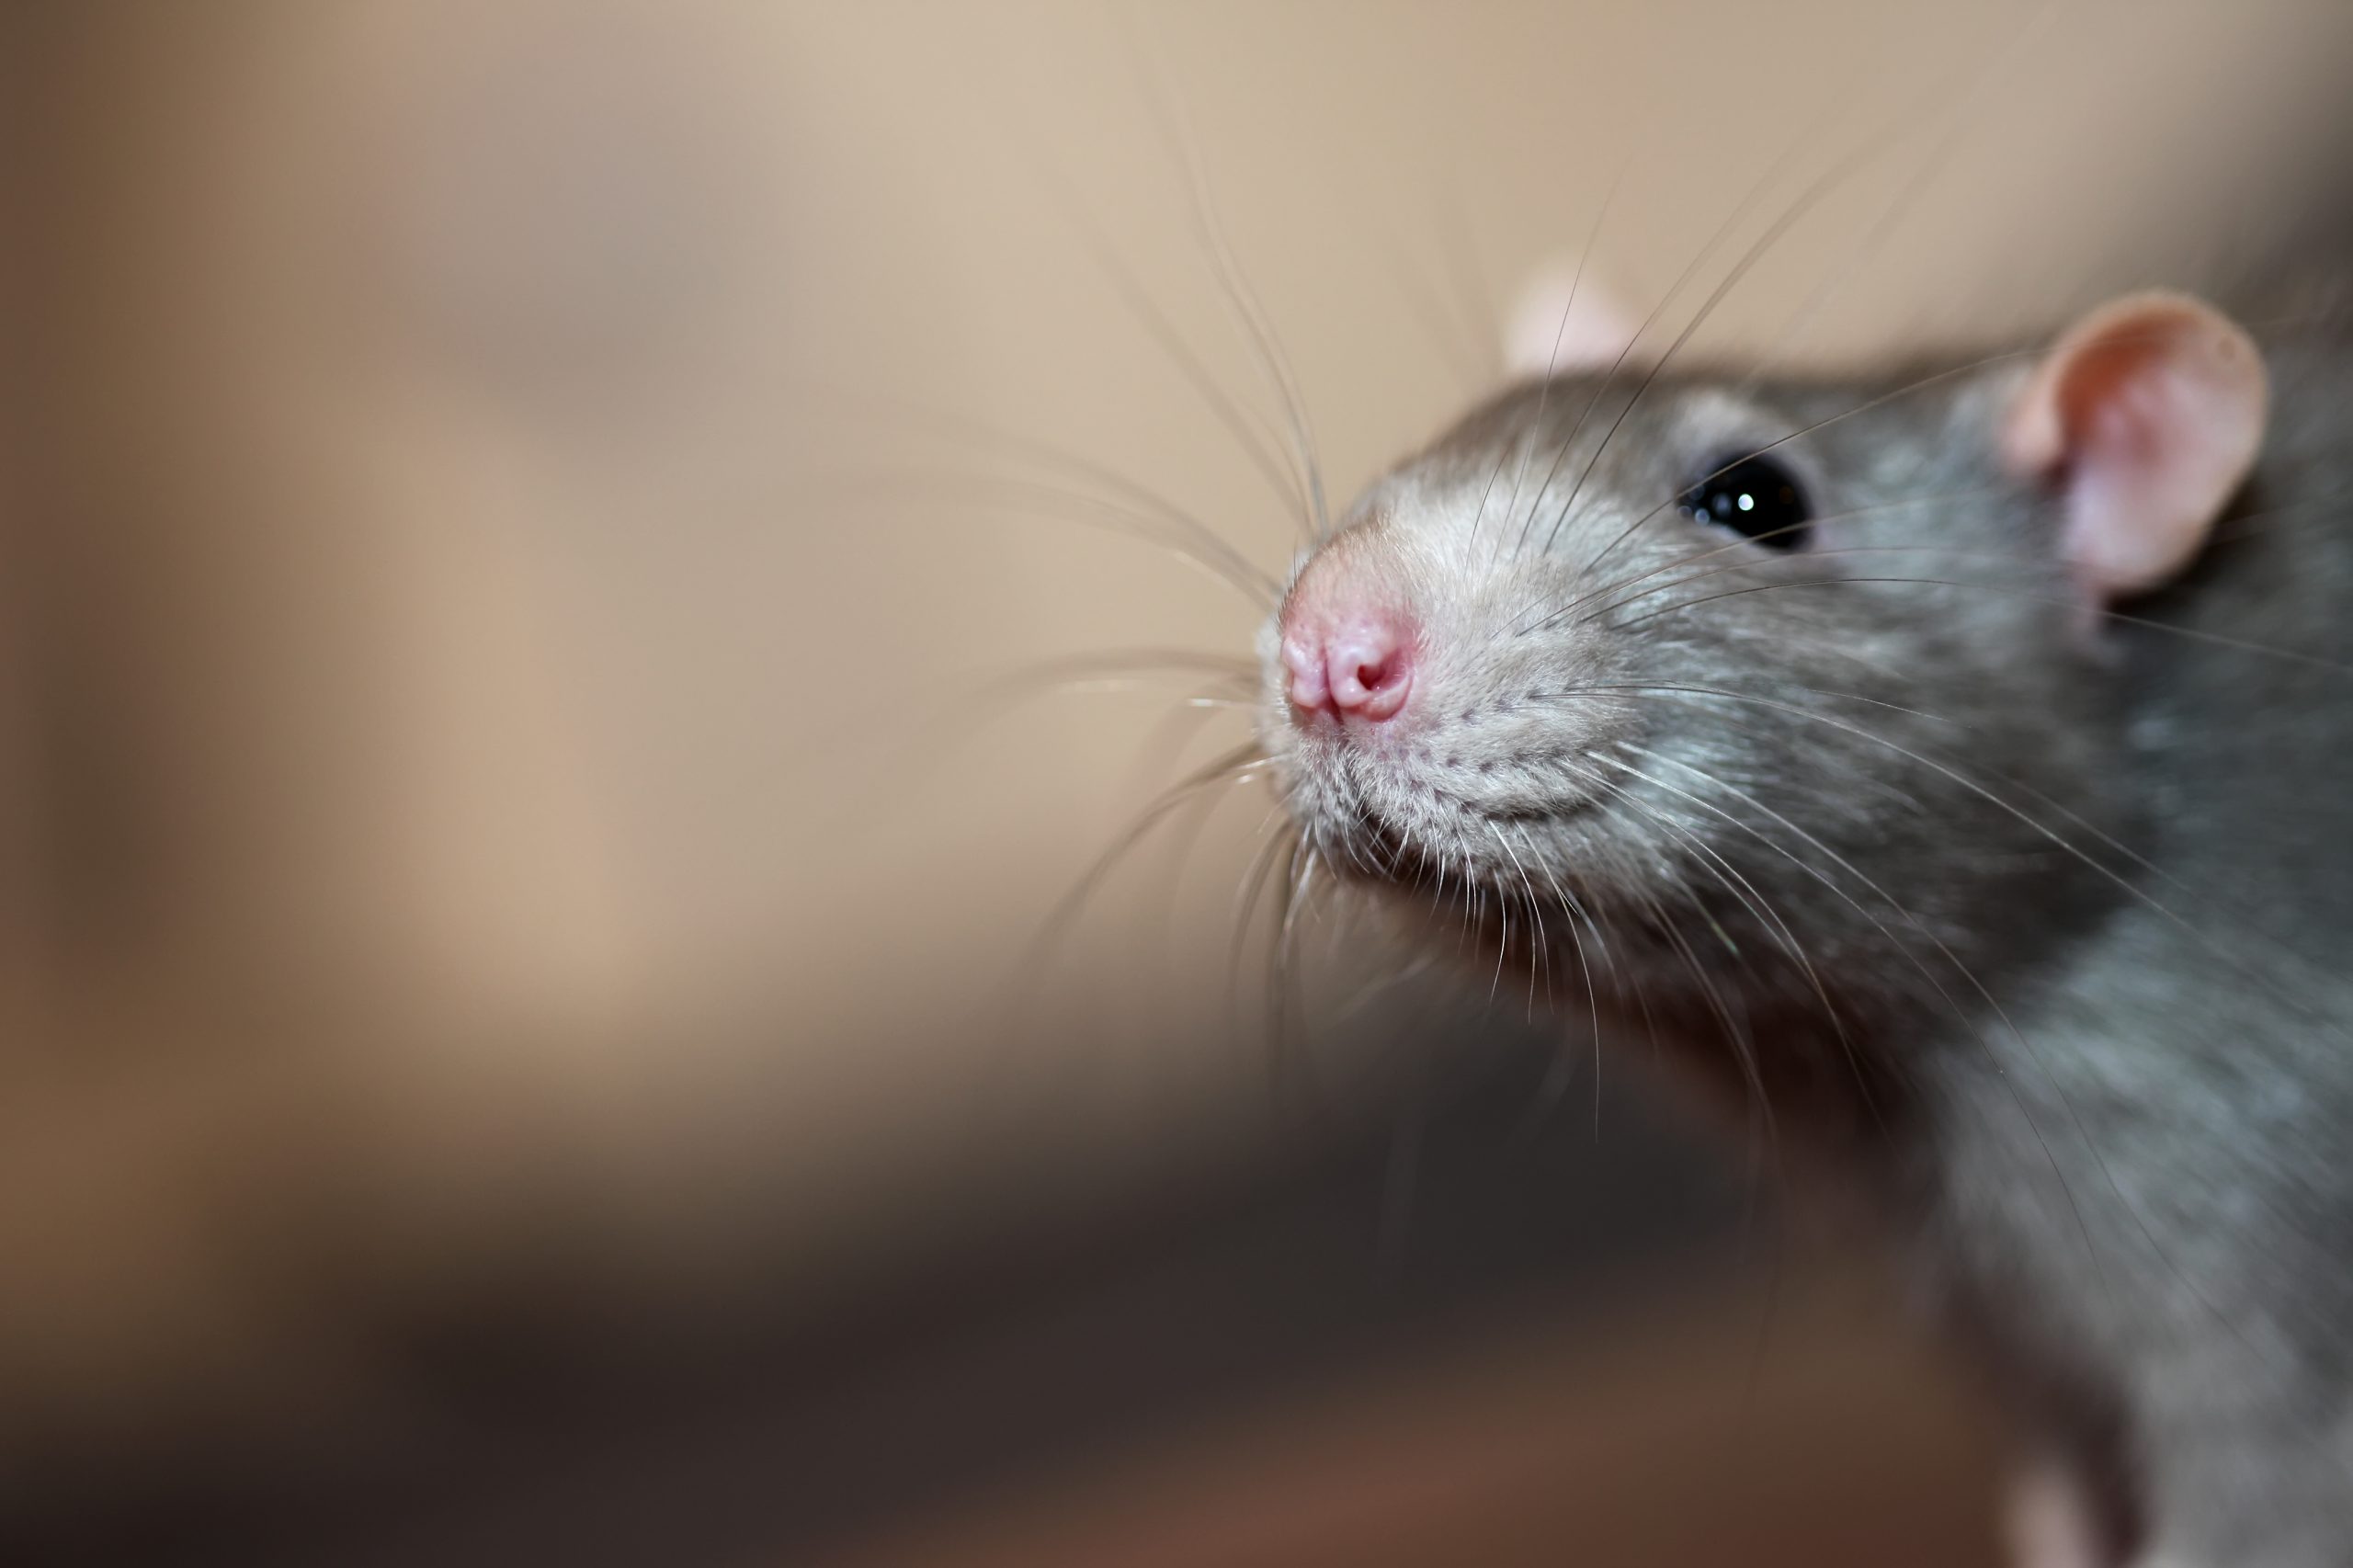 Portrait of home rat face close up